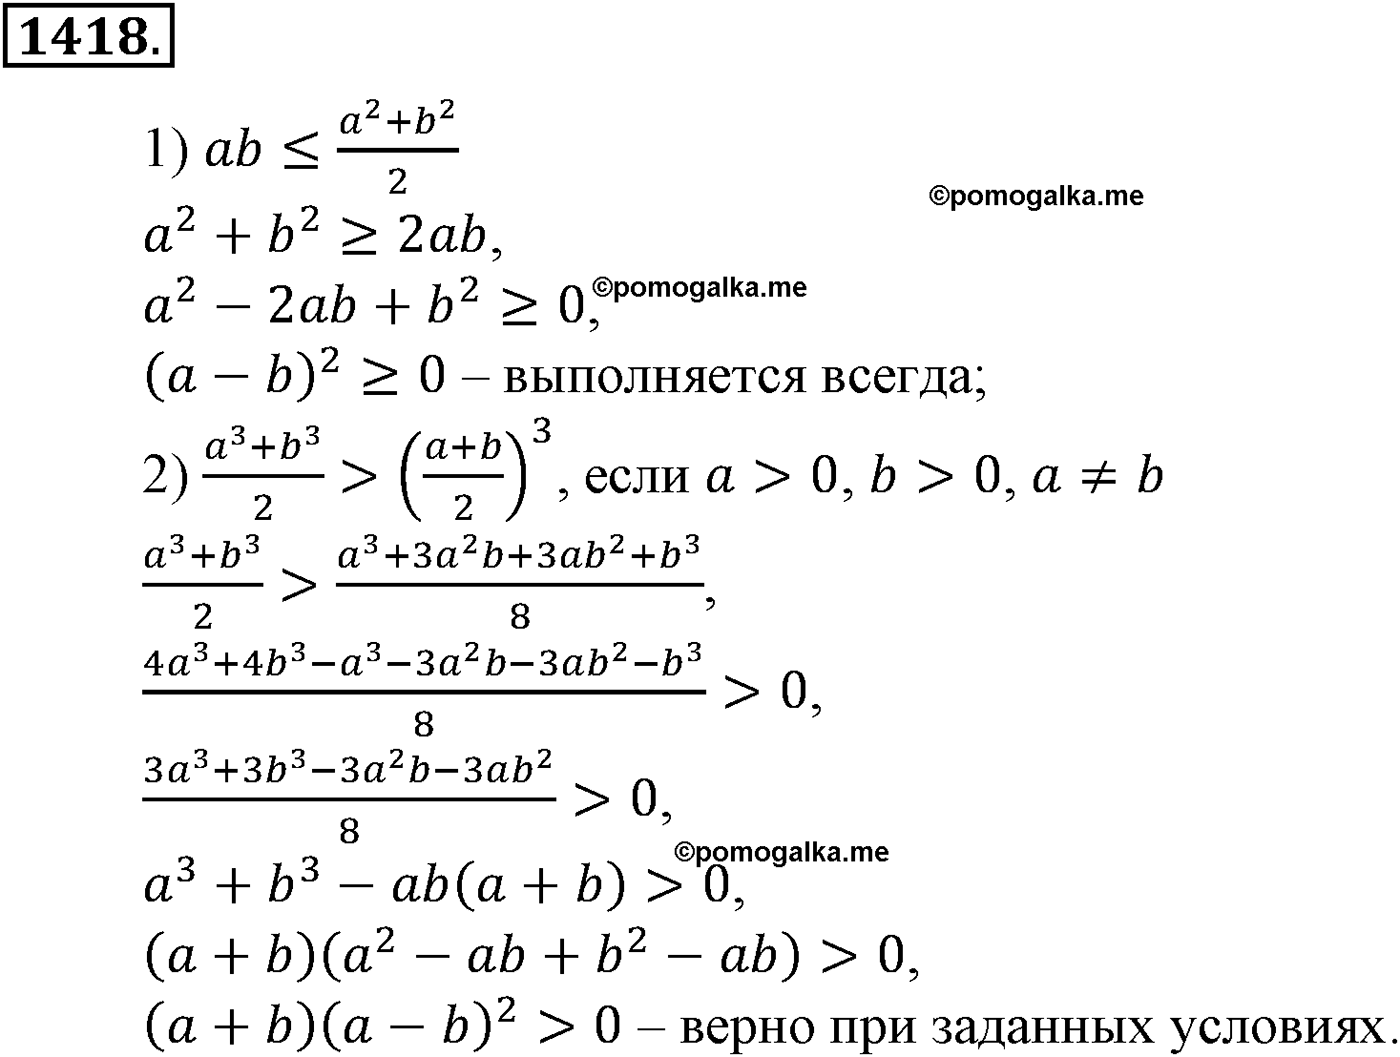 разбор задачи №1418 по алгебре за 10-11 класс из учебника Алимова, Колягина